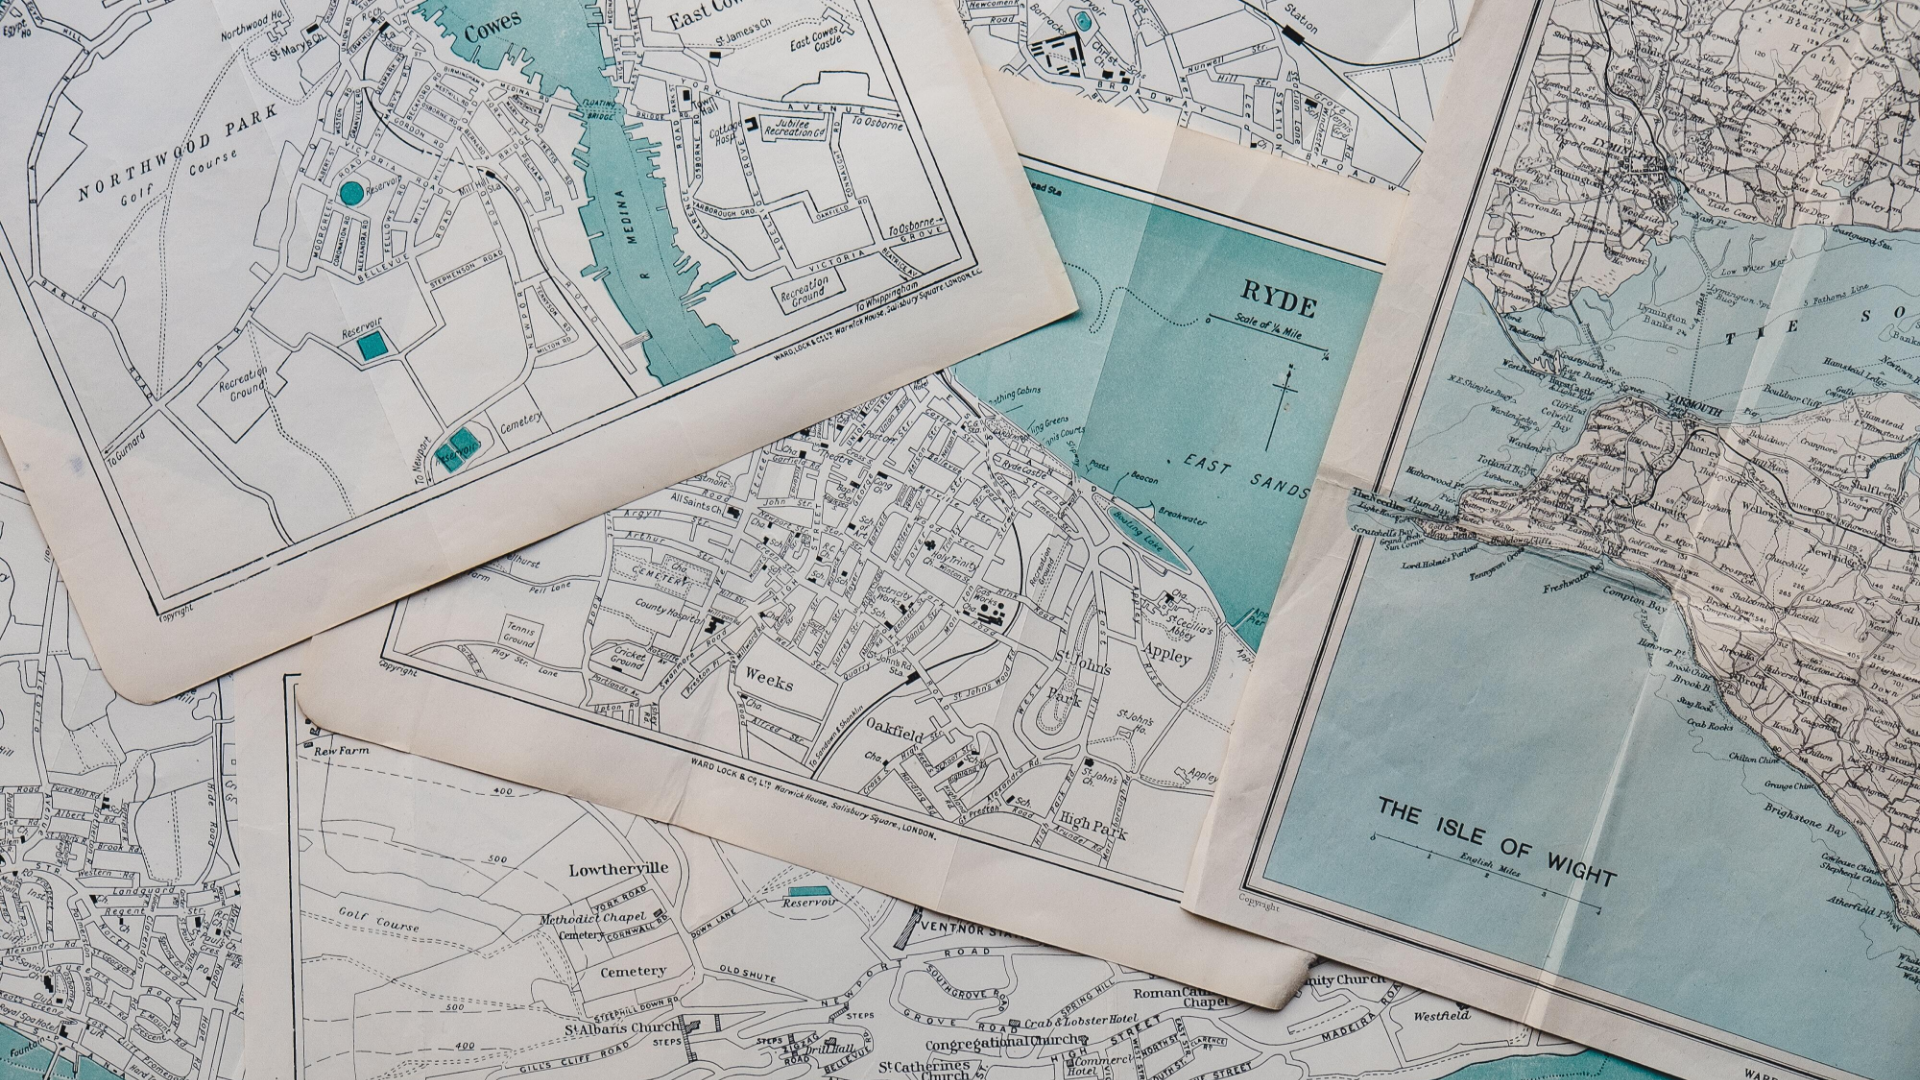 Du siehst eine Sammlung von alten Stadtkarten. Sie stehen sinnbildlich für die unterschiedlichen Wege zur Impelmentierung von Bildungstechnologie